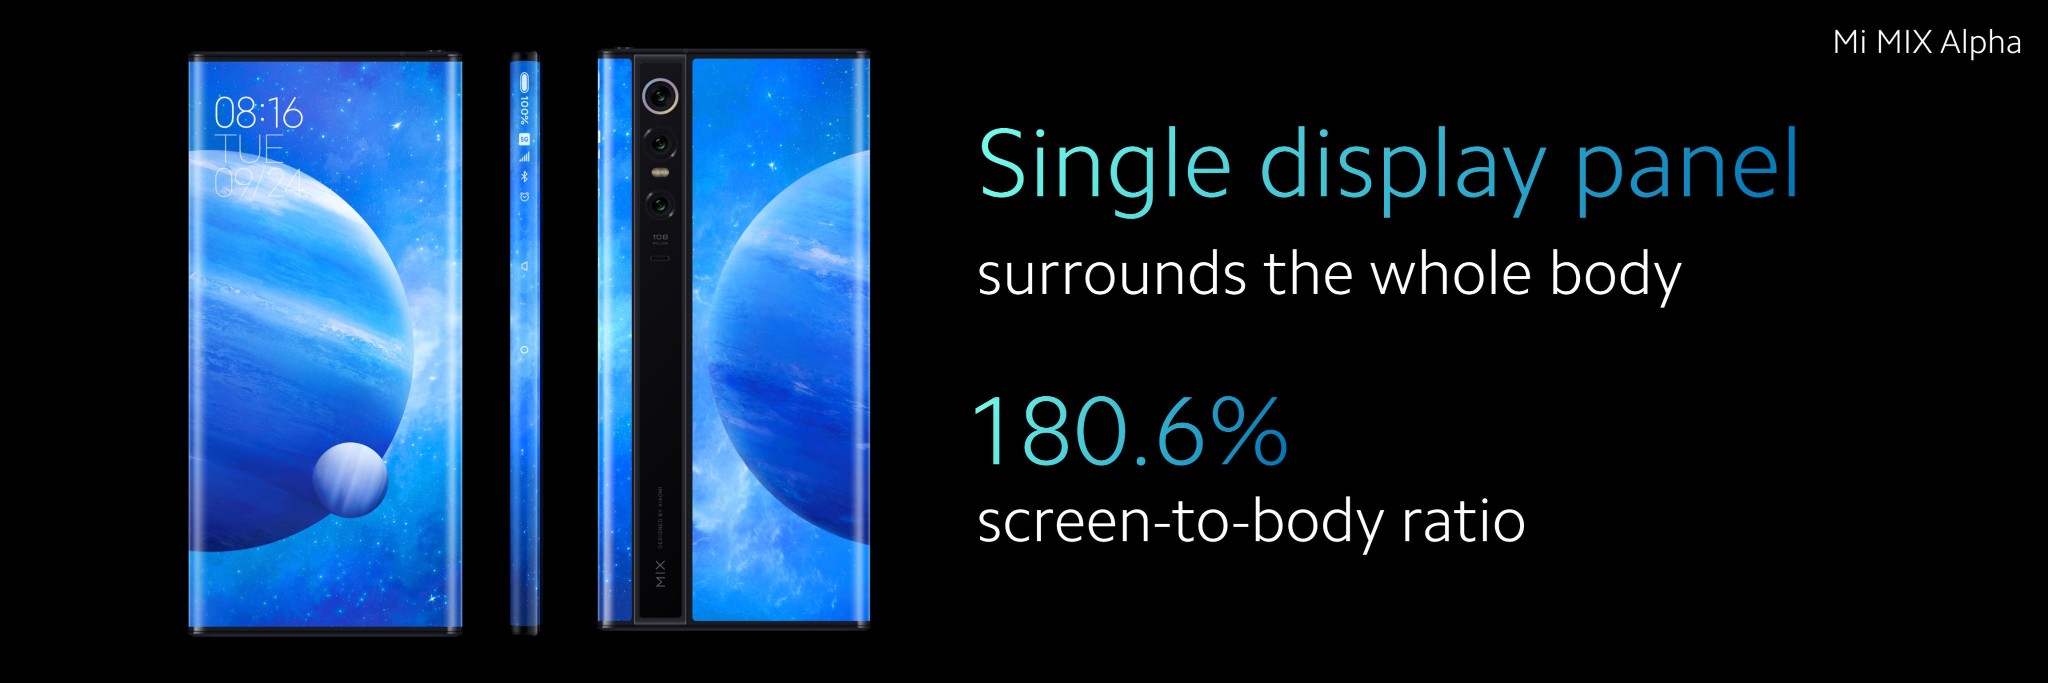 Cận cảnh Xiaomi Mi Mix Alpha: "siêu phẩm thiết kế" smartphone đương đại